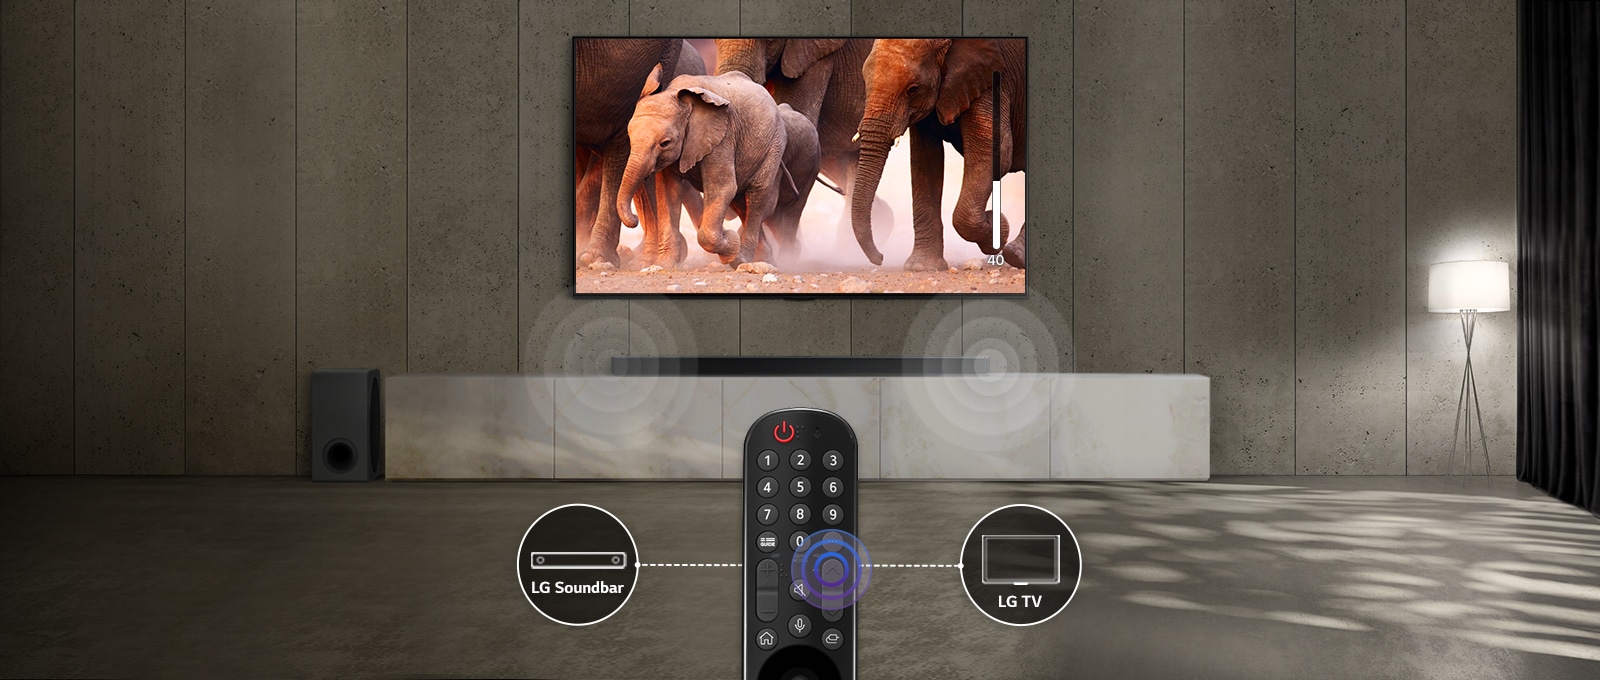 Televizor v místnosti s tlumenými světly ukazuje záběry procházejících slonů. A na soundbaru pod televizorem se odehrává odpovídající zvukový efekt. Ve spodní části obrázku je dálkové ovládání televizoru a soundbar a ikona televizoru jsou vidět na levé a pravé straně dálkového ovládání.